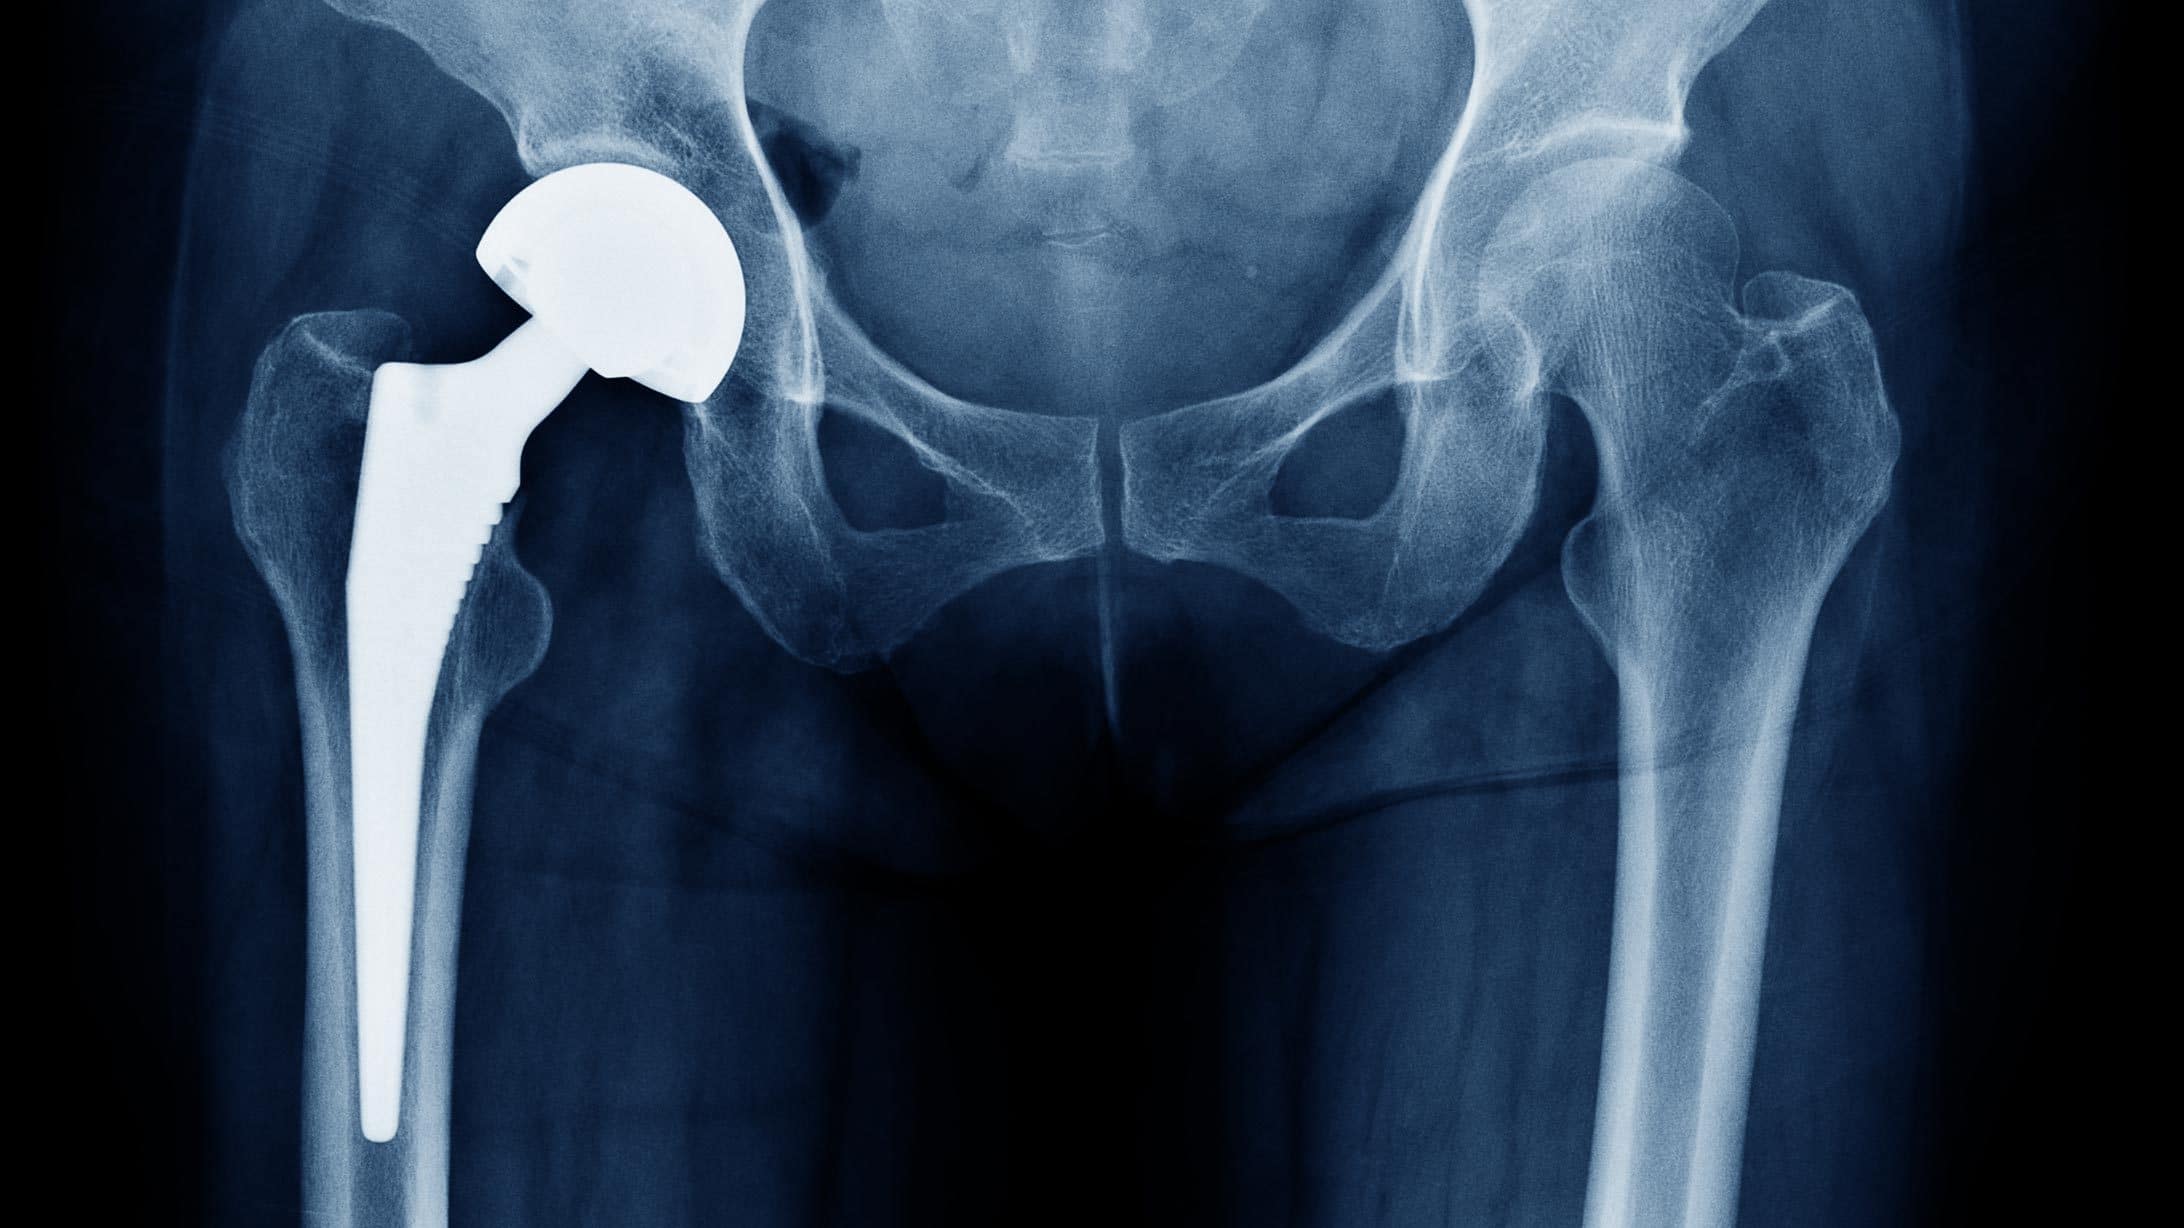 Röntgenbild einer Hüfte mit einem künstlichen Hüftgelenk